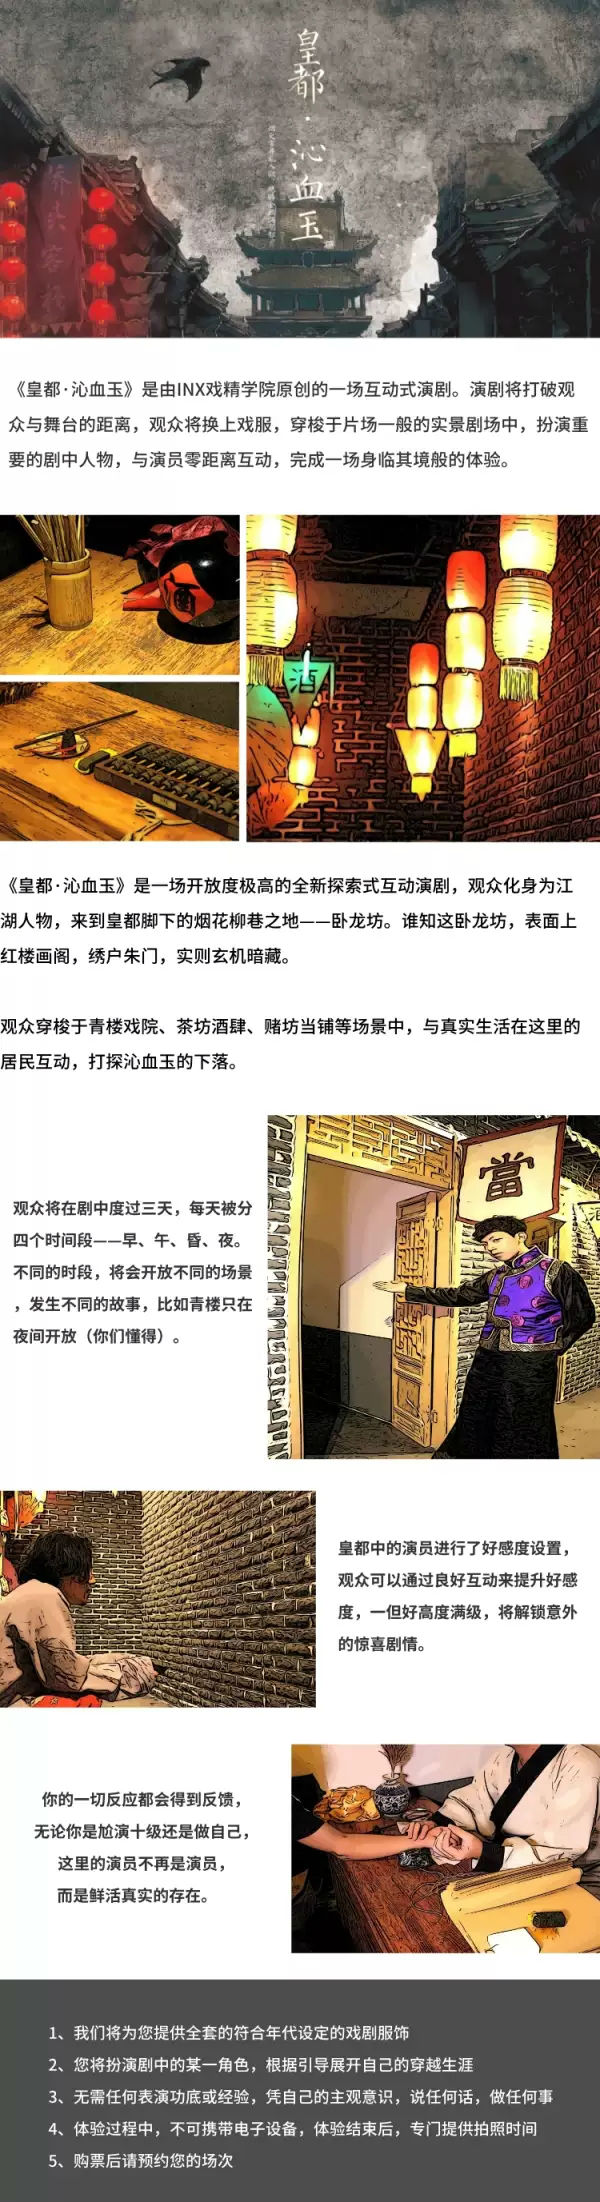 2020互动演剧《皇都·沁血玉》体验烟红尘市井真实生活-北京站